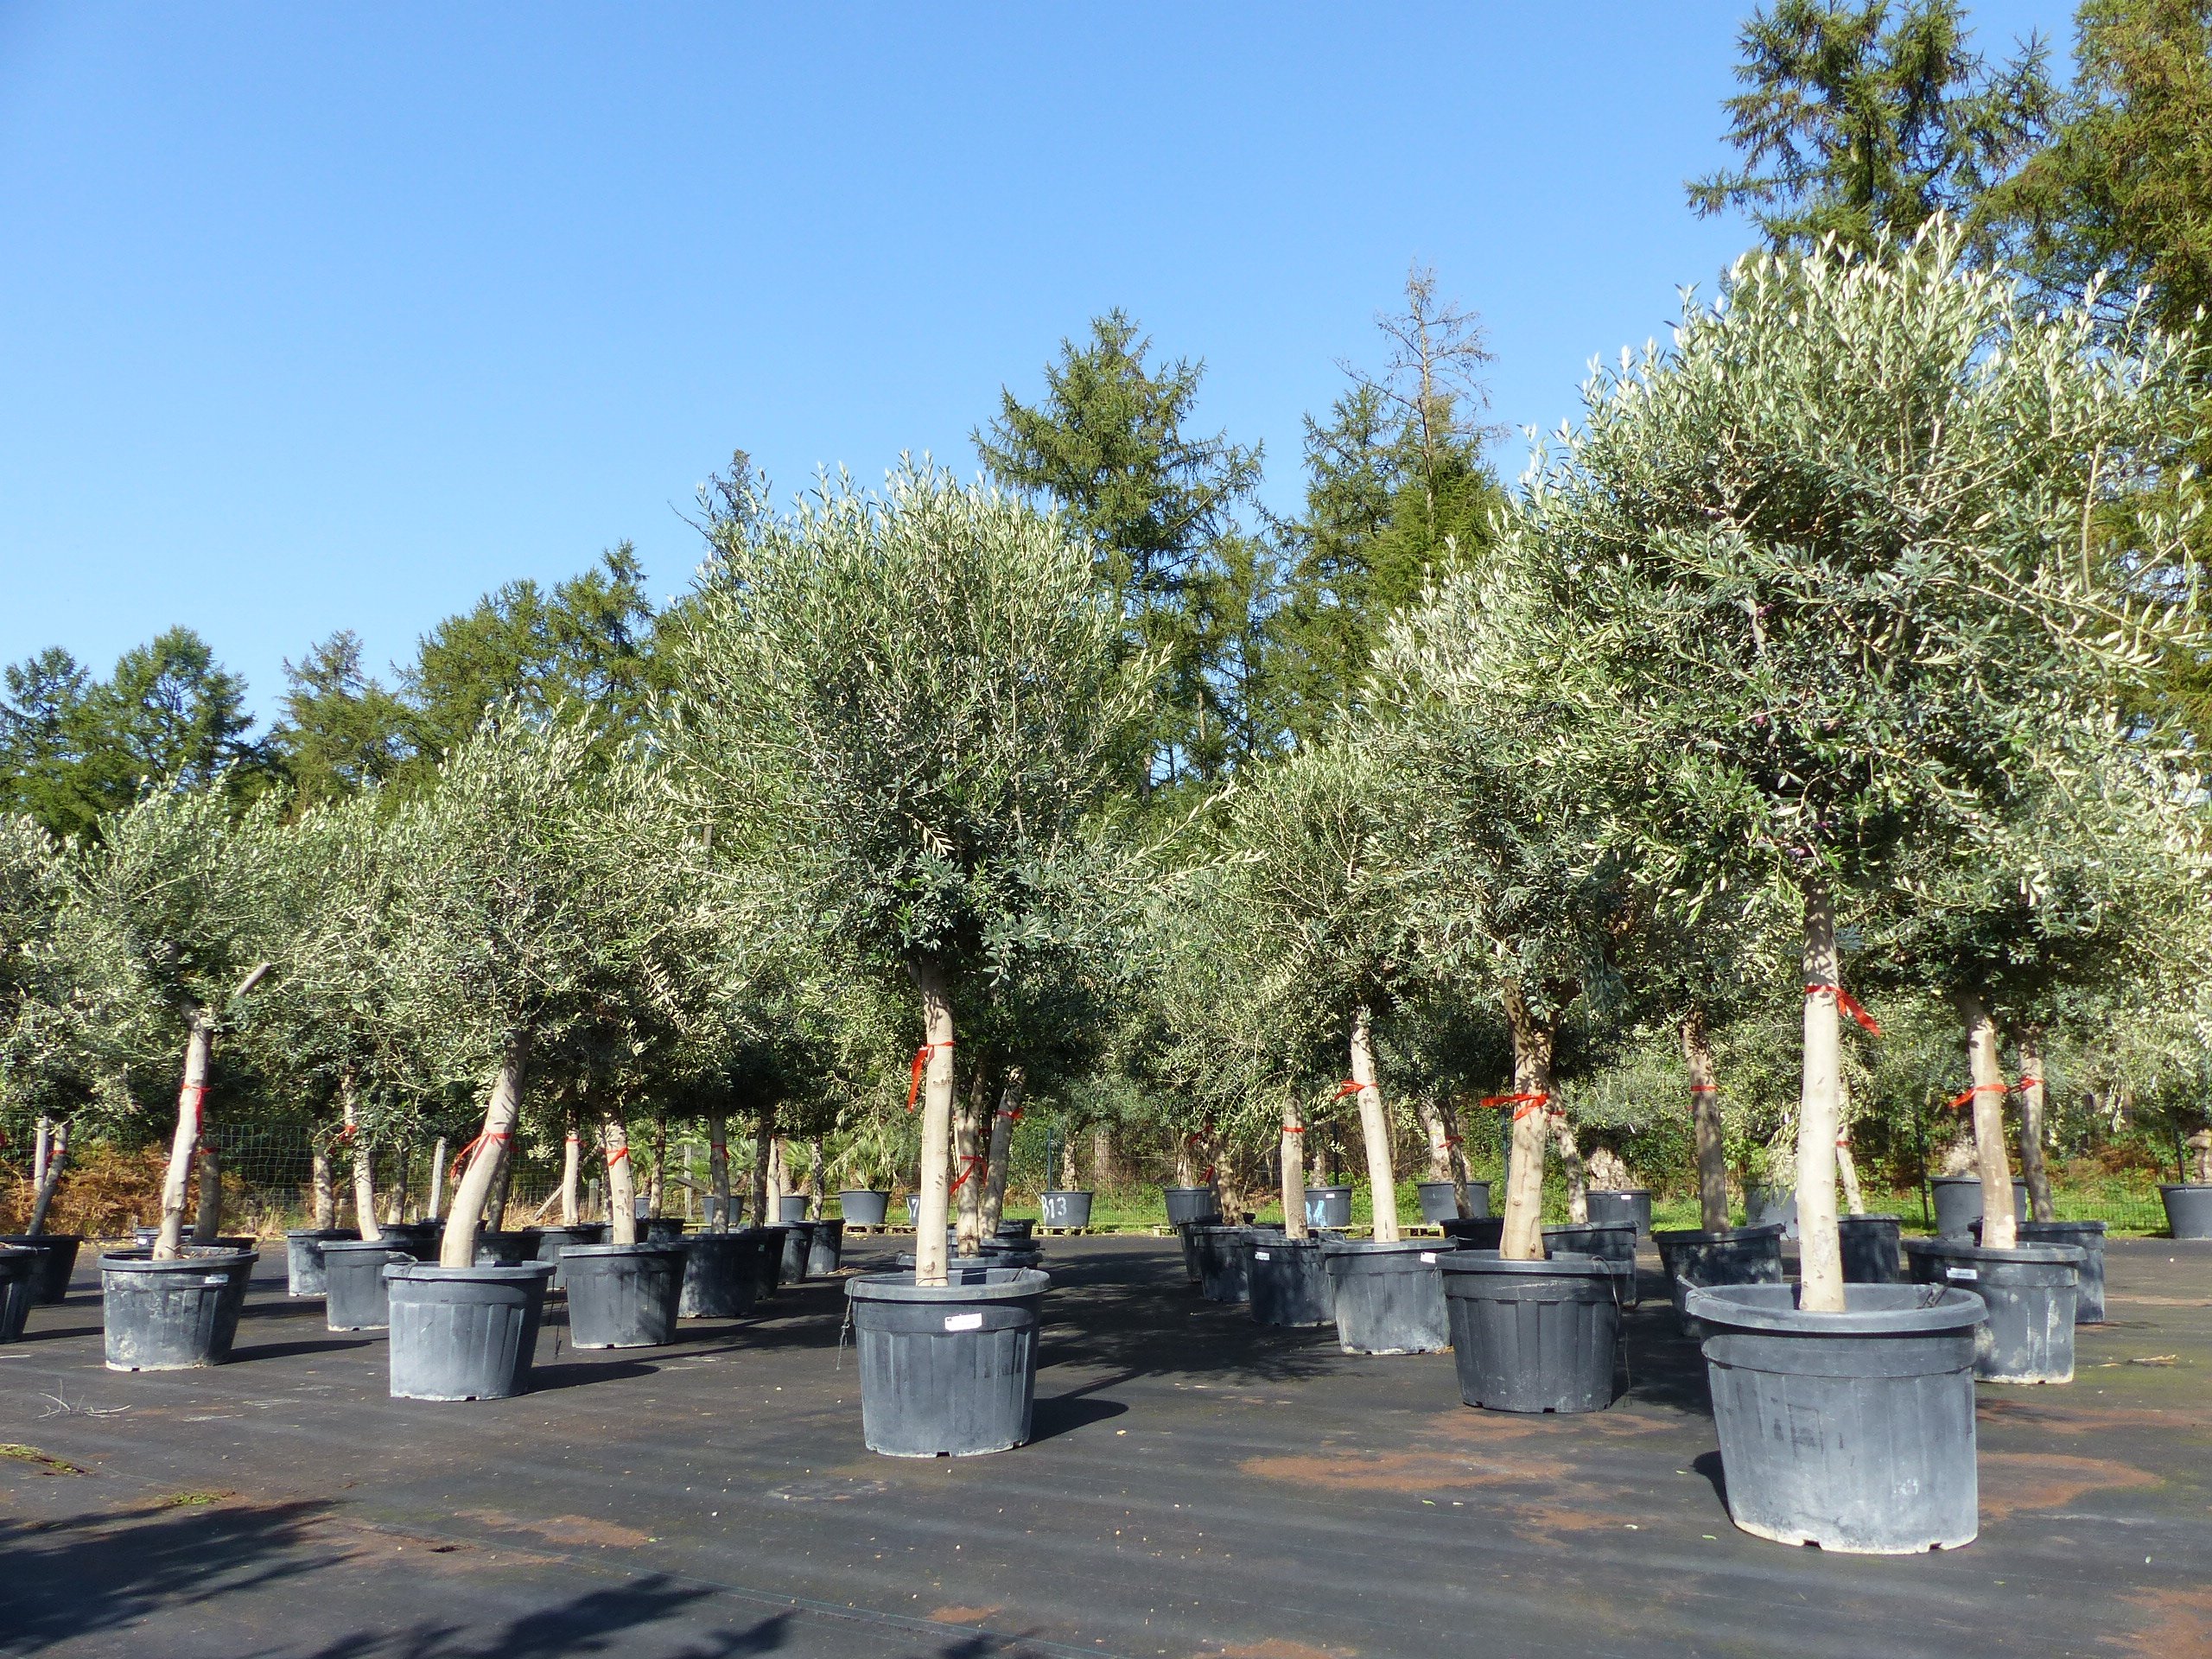 Olivenbaum im 90L Topf, 190 - 200 cm knorrige urige Olive, winterhart, Olea Europaea